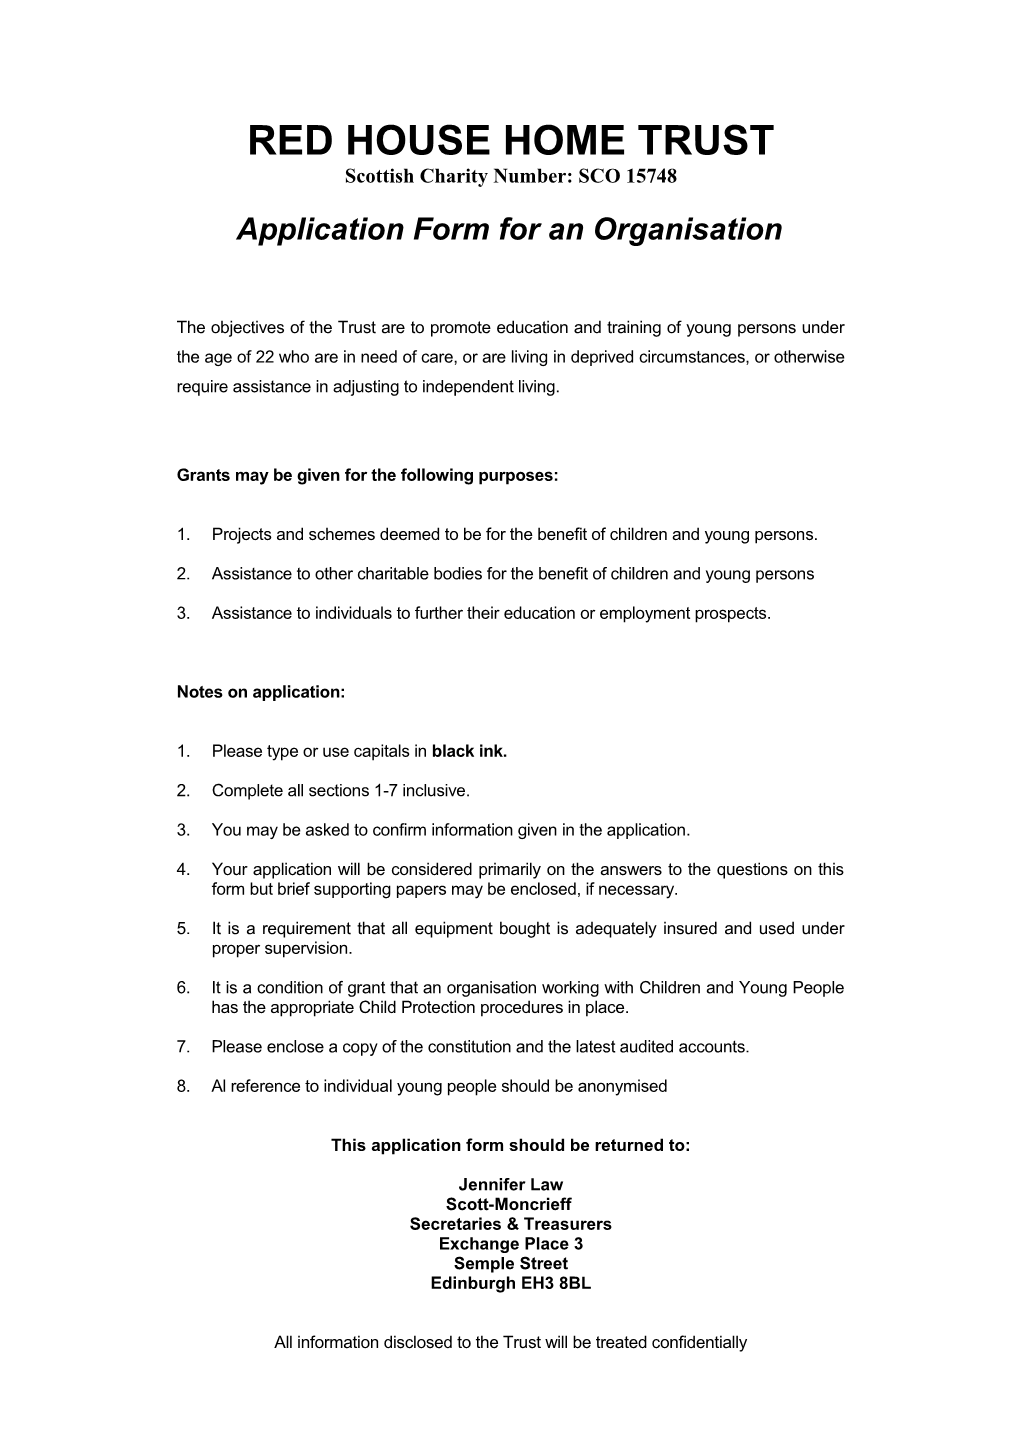 App Form Organisation Oct 2017